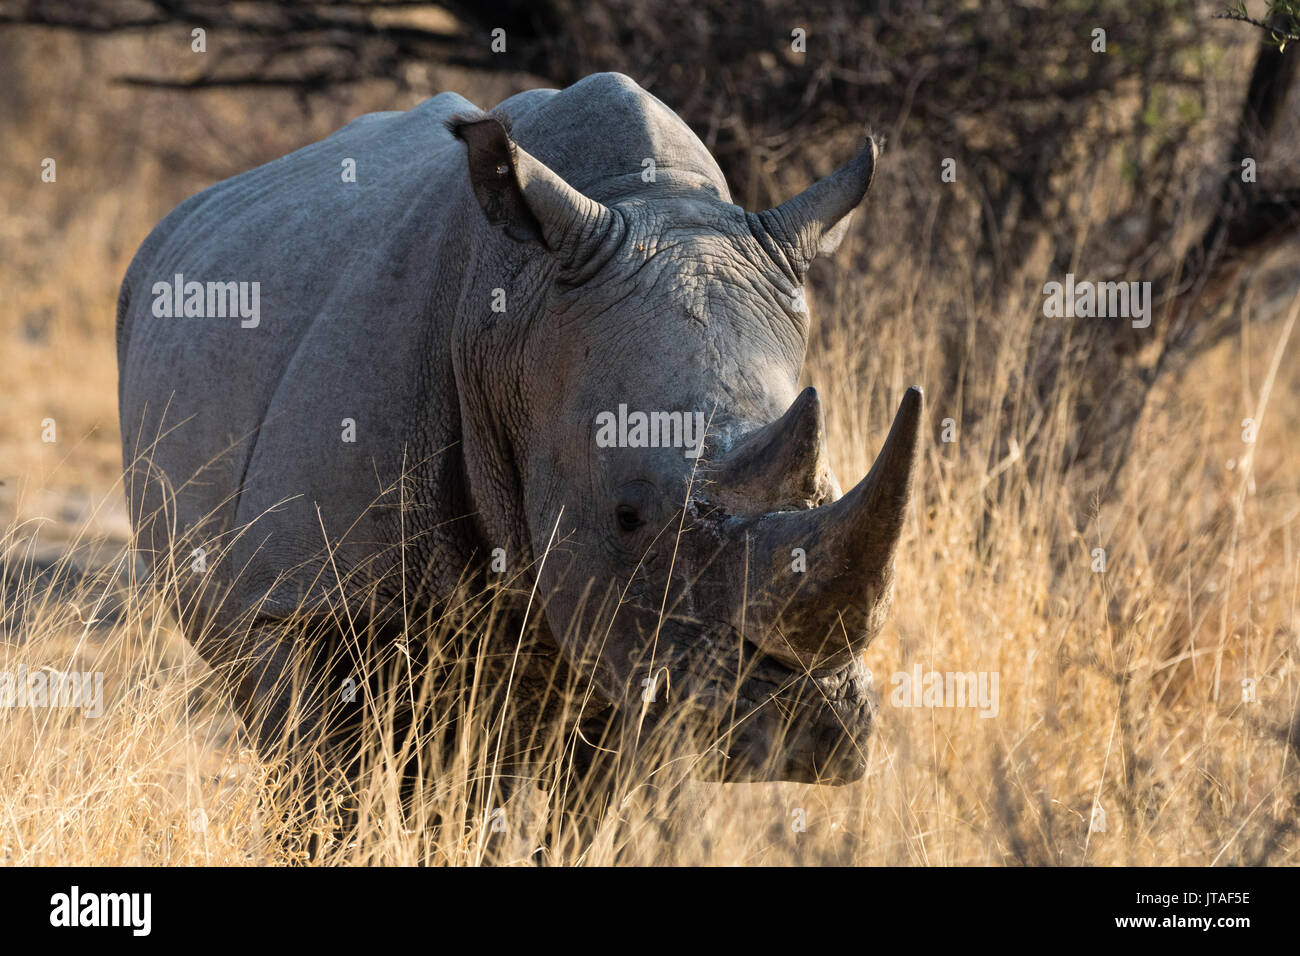 Le rhinocéros blanc (Ceratotherium simum) regardant la caméra, Botswana, Africa Banque D'Images